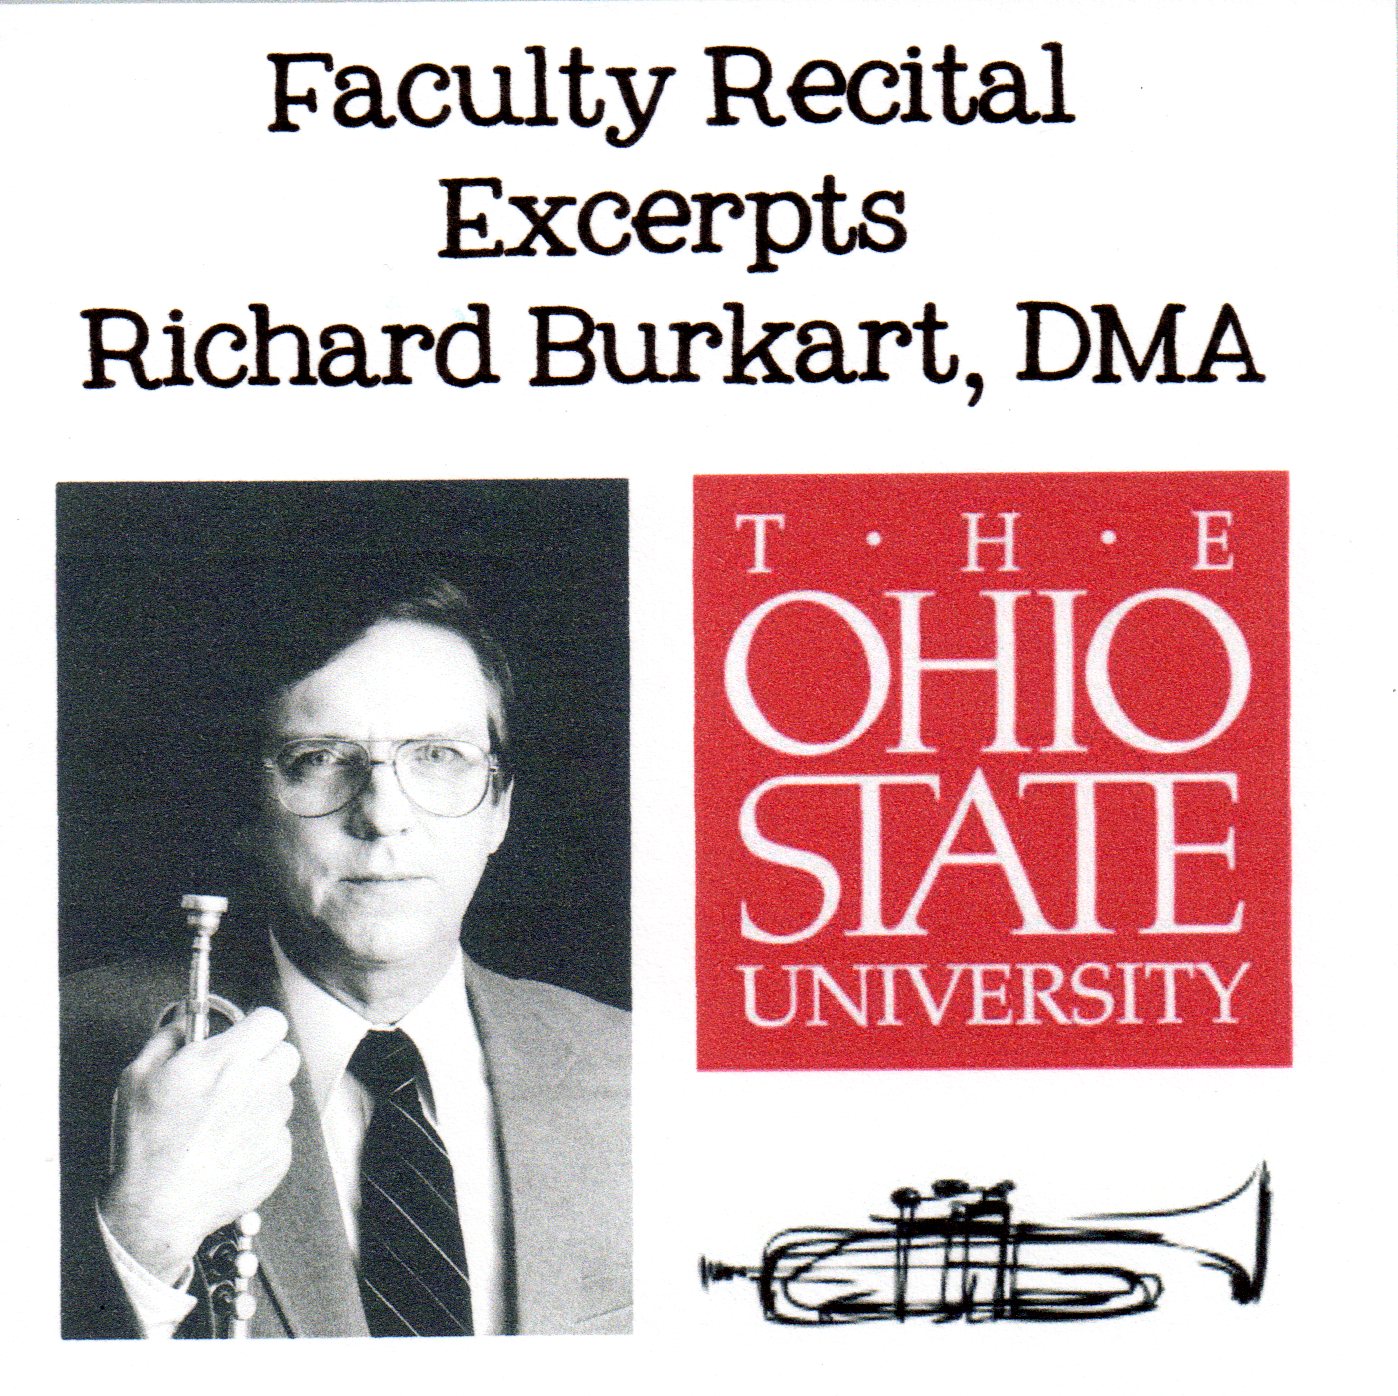 Dr. Richard Burkart